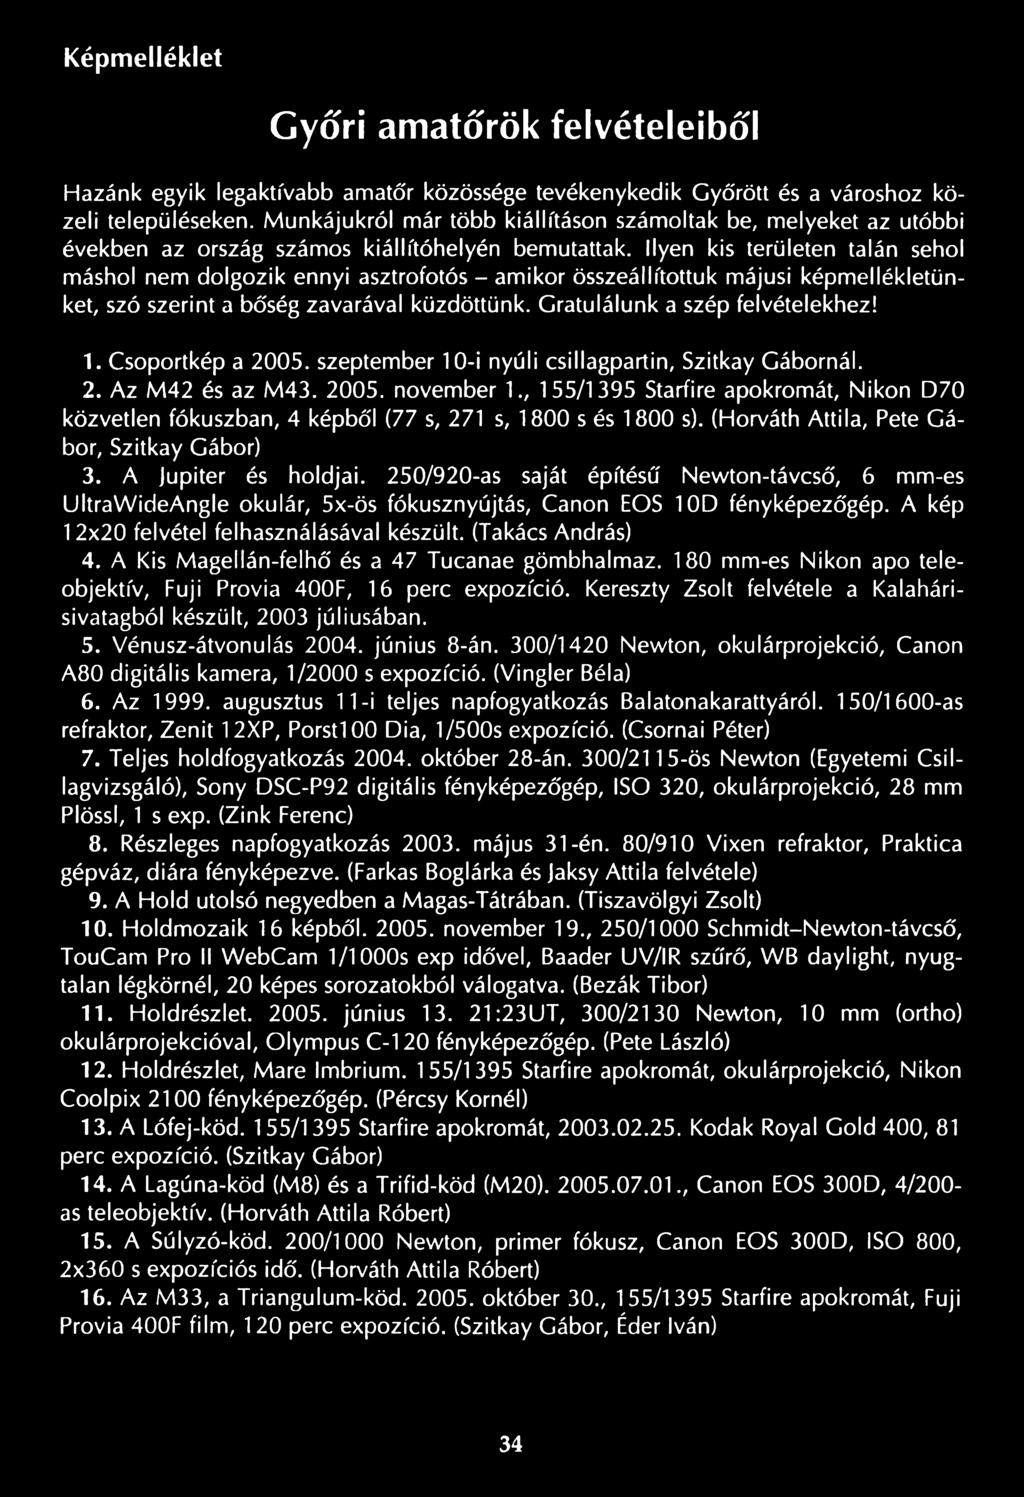 , 155/1395 Starfire apokromát, Nikon D70 közvetlen fókuszban, 4 képből (77 s, 271 s, 1800 s és 1800 s). (Horváth Attila, Pete G á bor, Szitkay Gábor) 3. A Jupiter és holdjai.